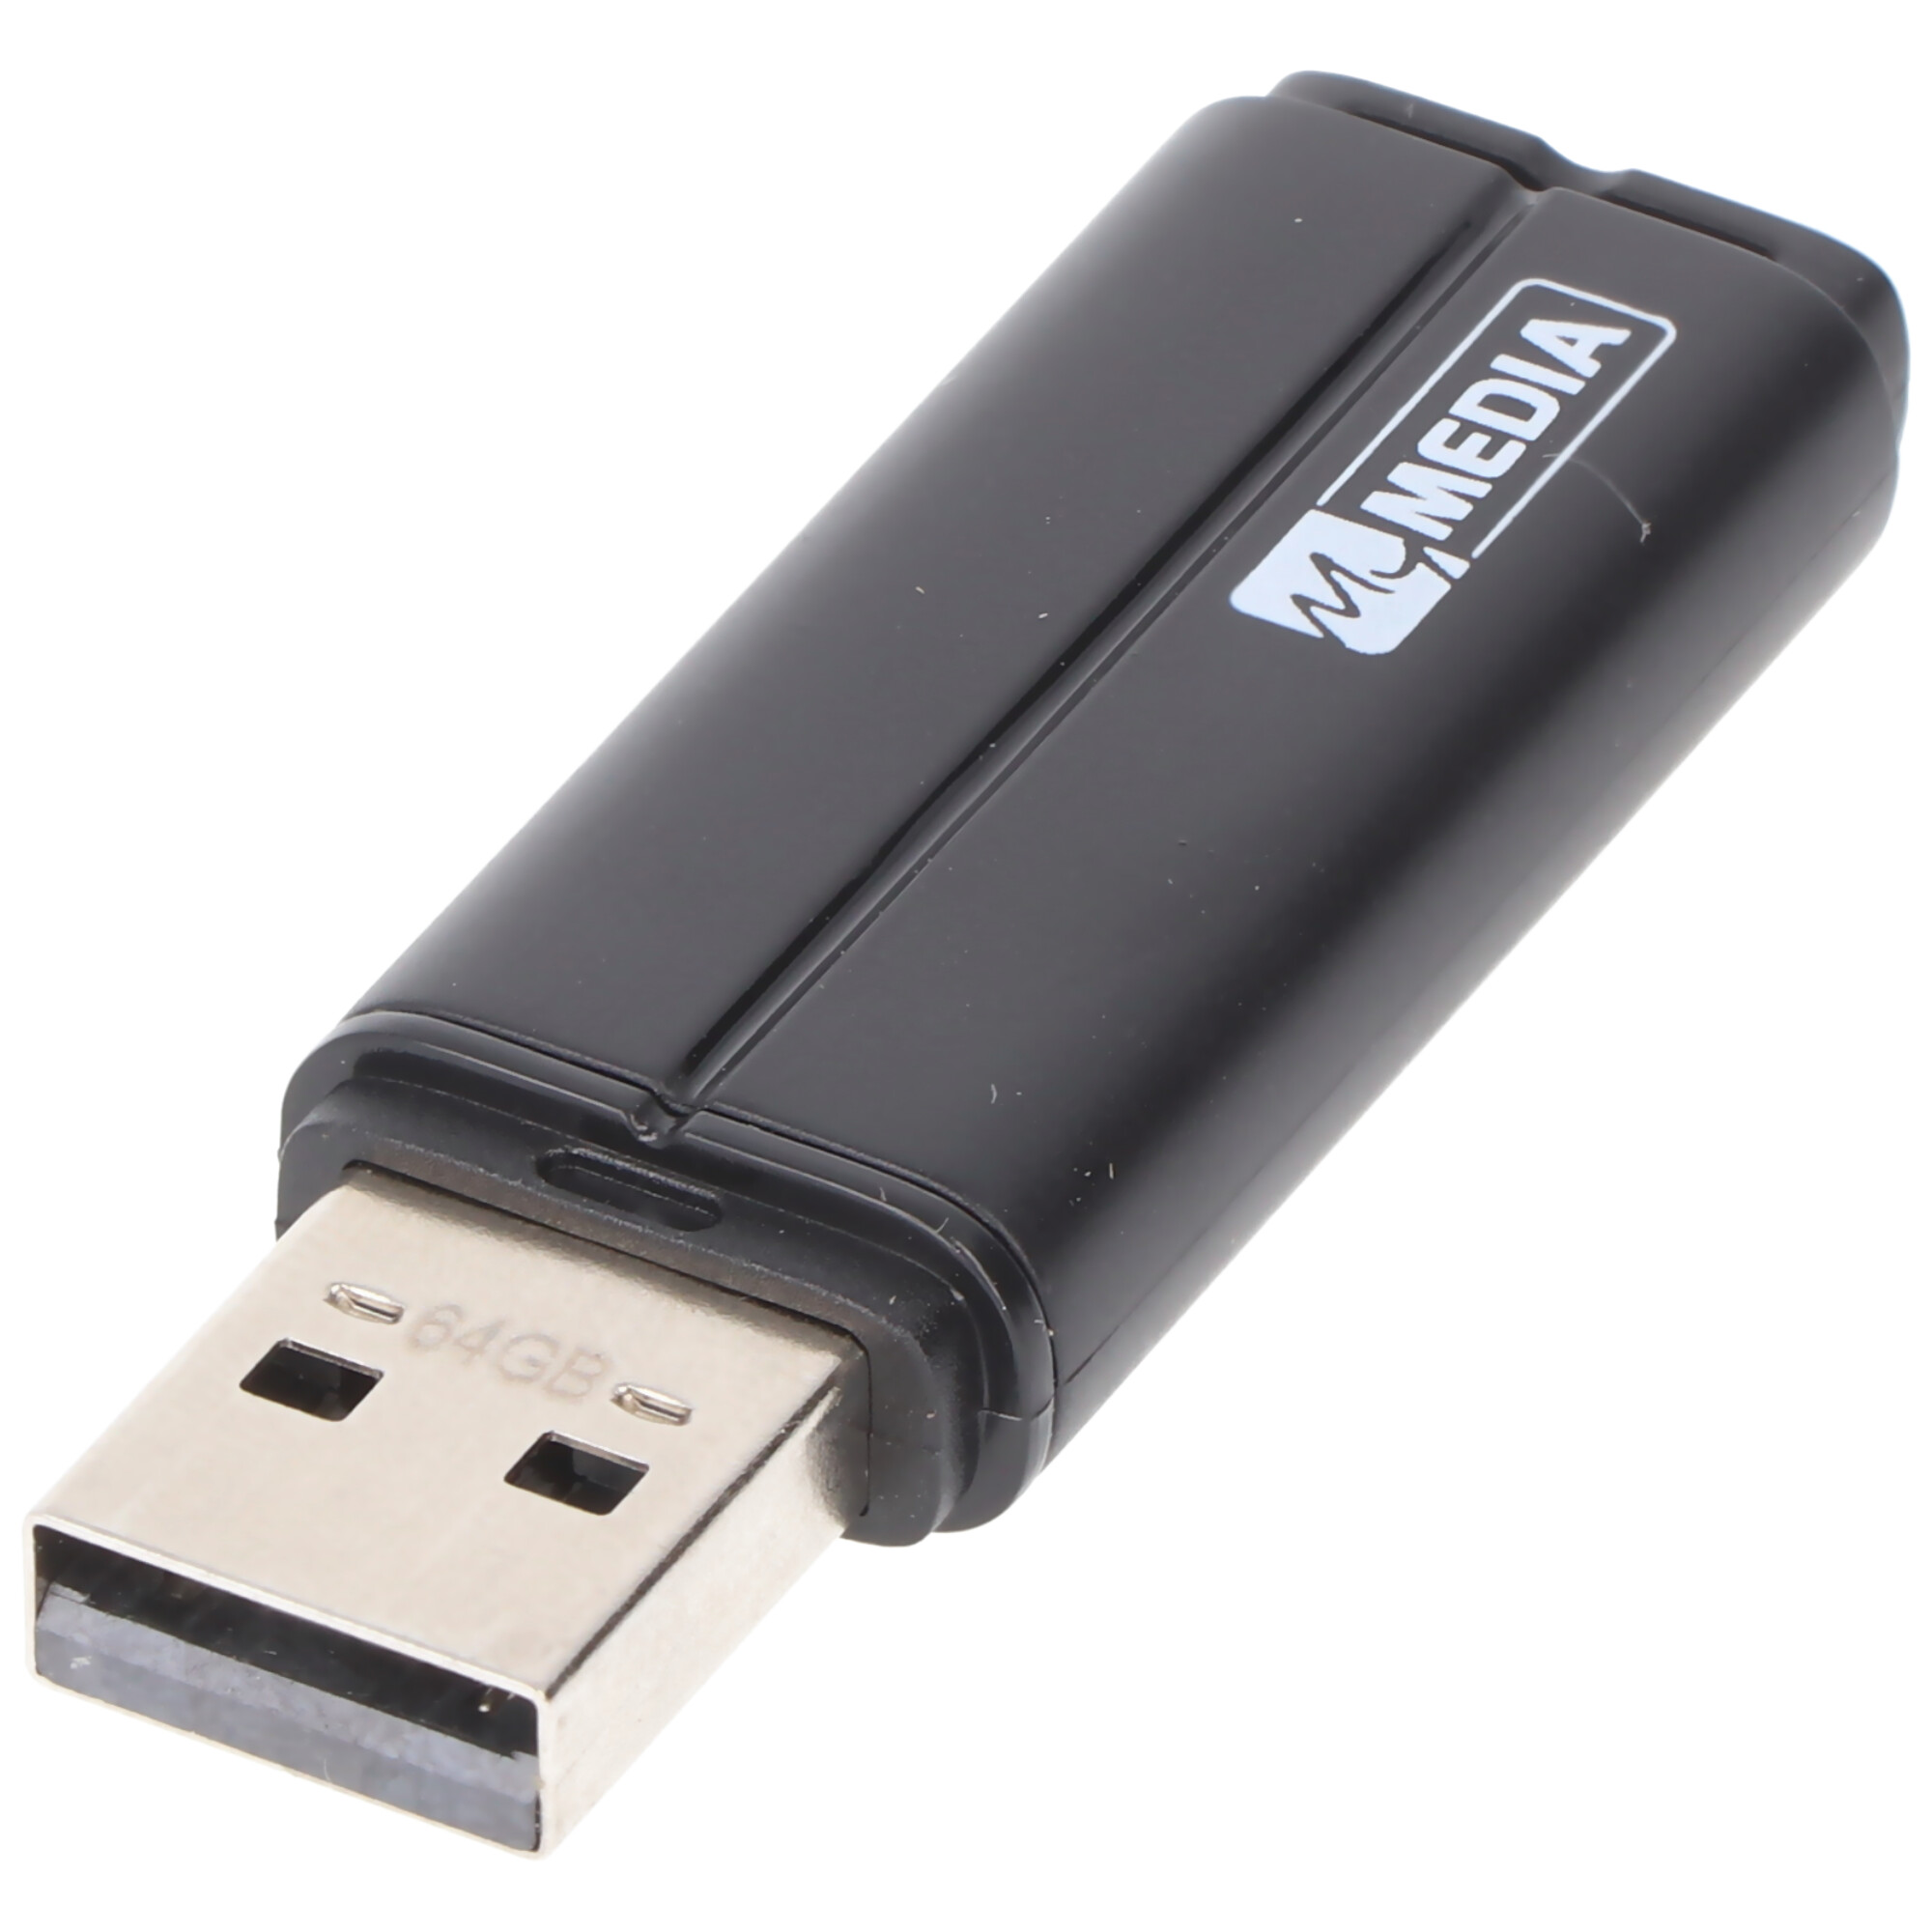 Mymedia USB 2.0 Stick 64GB, schwarz Retail-Blister